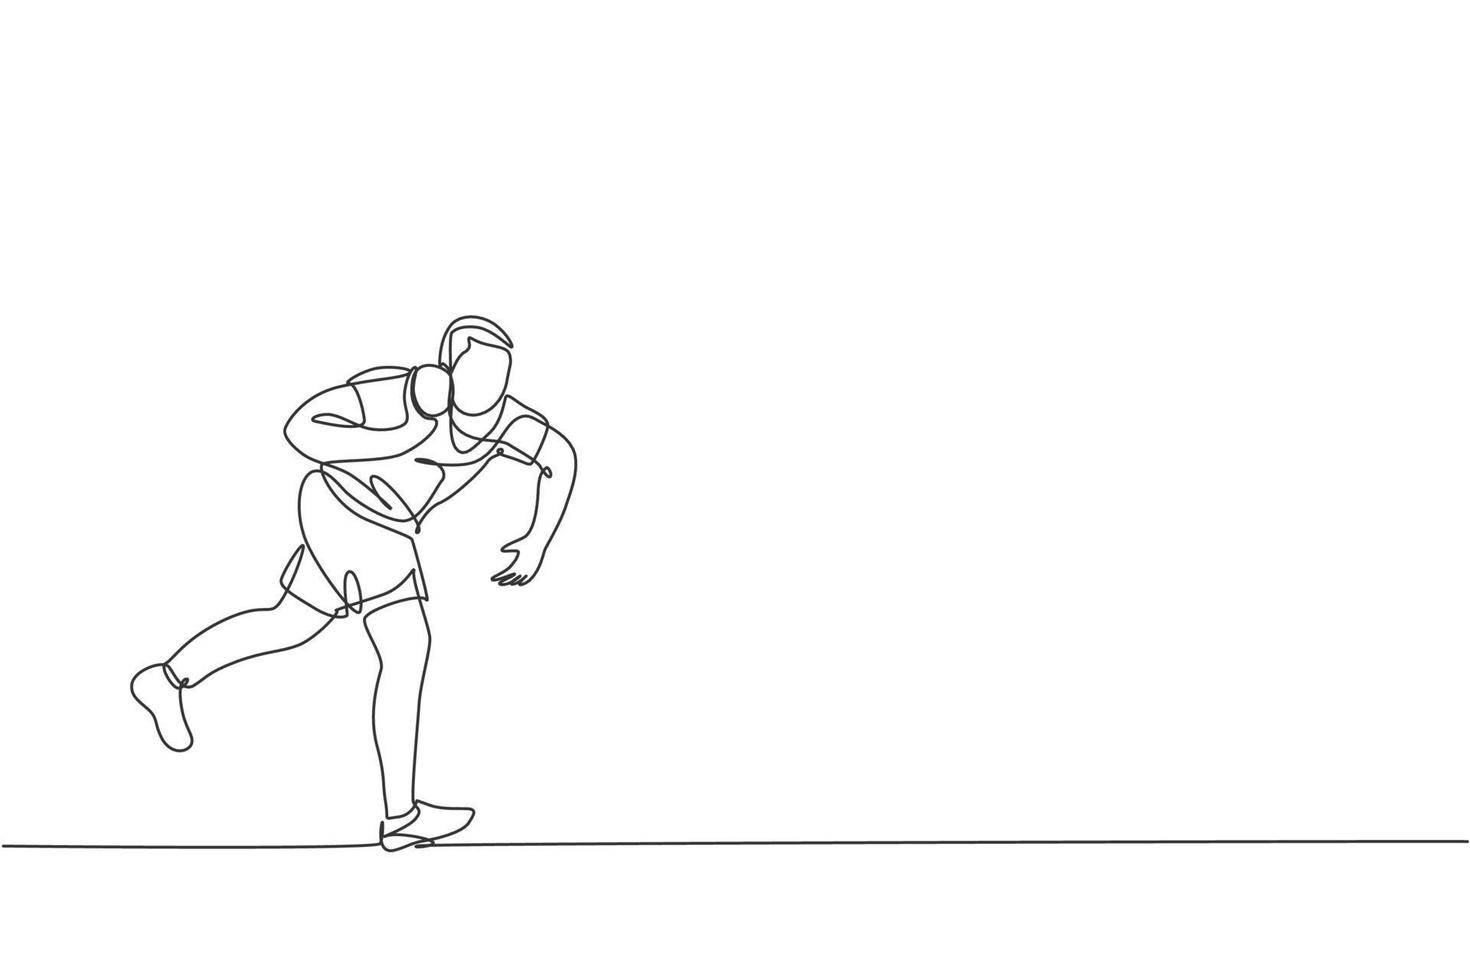 un dibujo de una sola línea del ejercicio de un hombre joven y enérgico para lanzar tiro en la ilustración de vector gráfico de campo. concepto de deporte atlético de estilo de vida saludable. diseño moderno de dibujo de línea continua